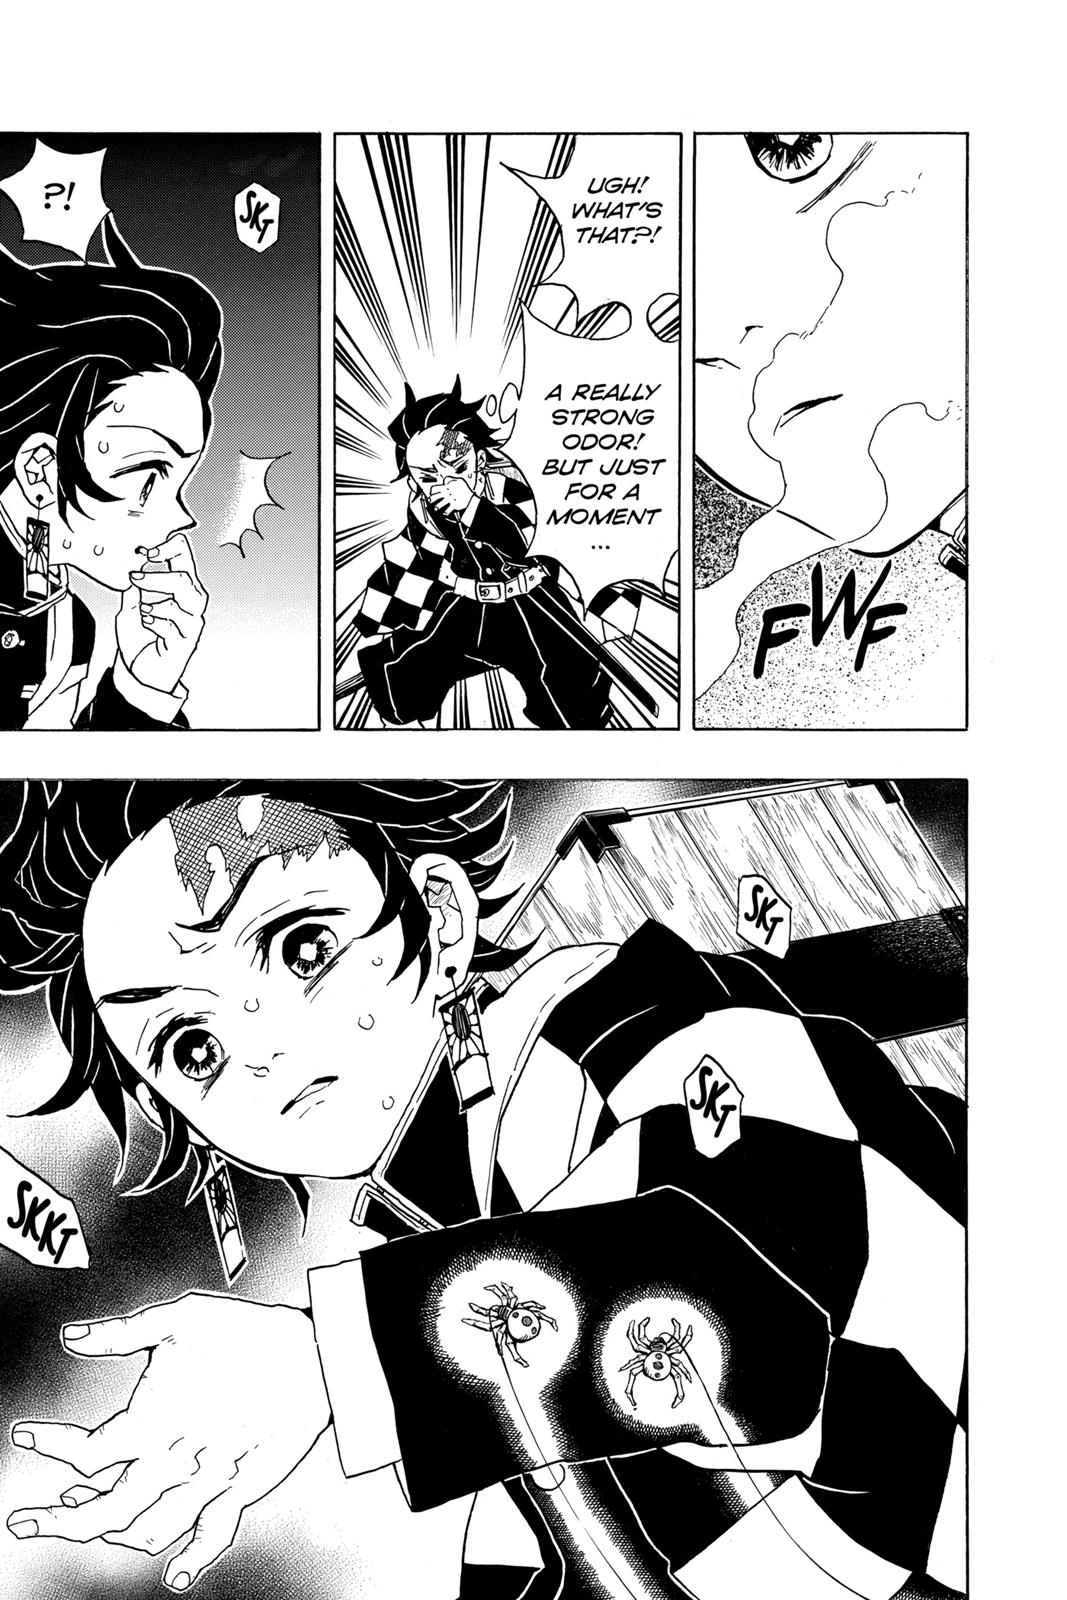 Demon Slayer Manga Manga Chapter - 29 - image 6